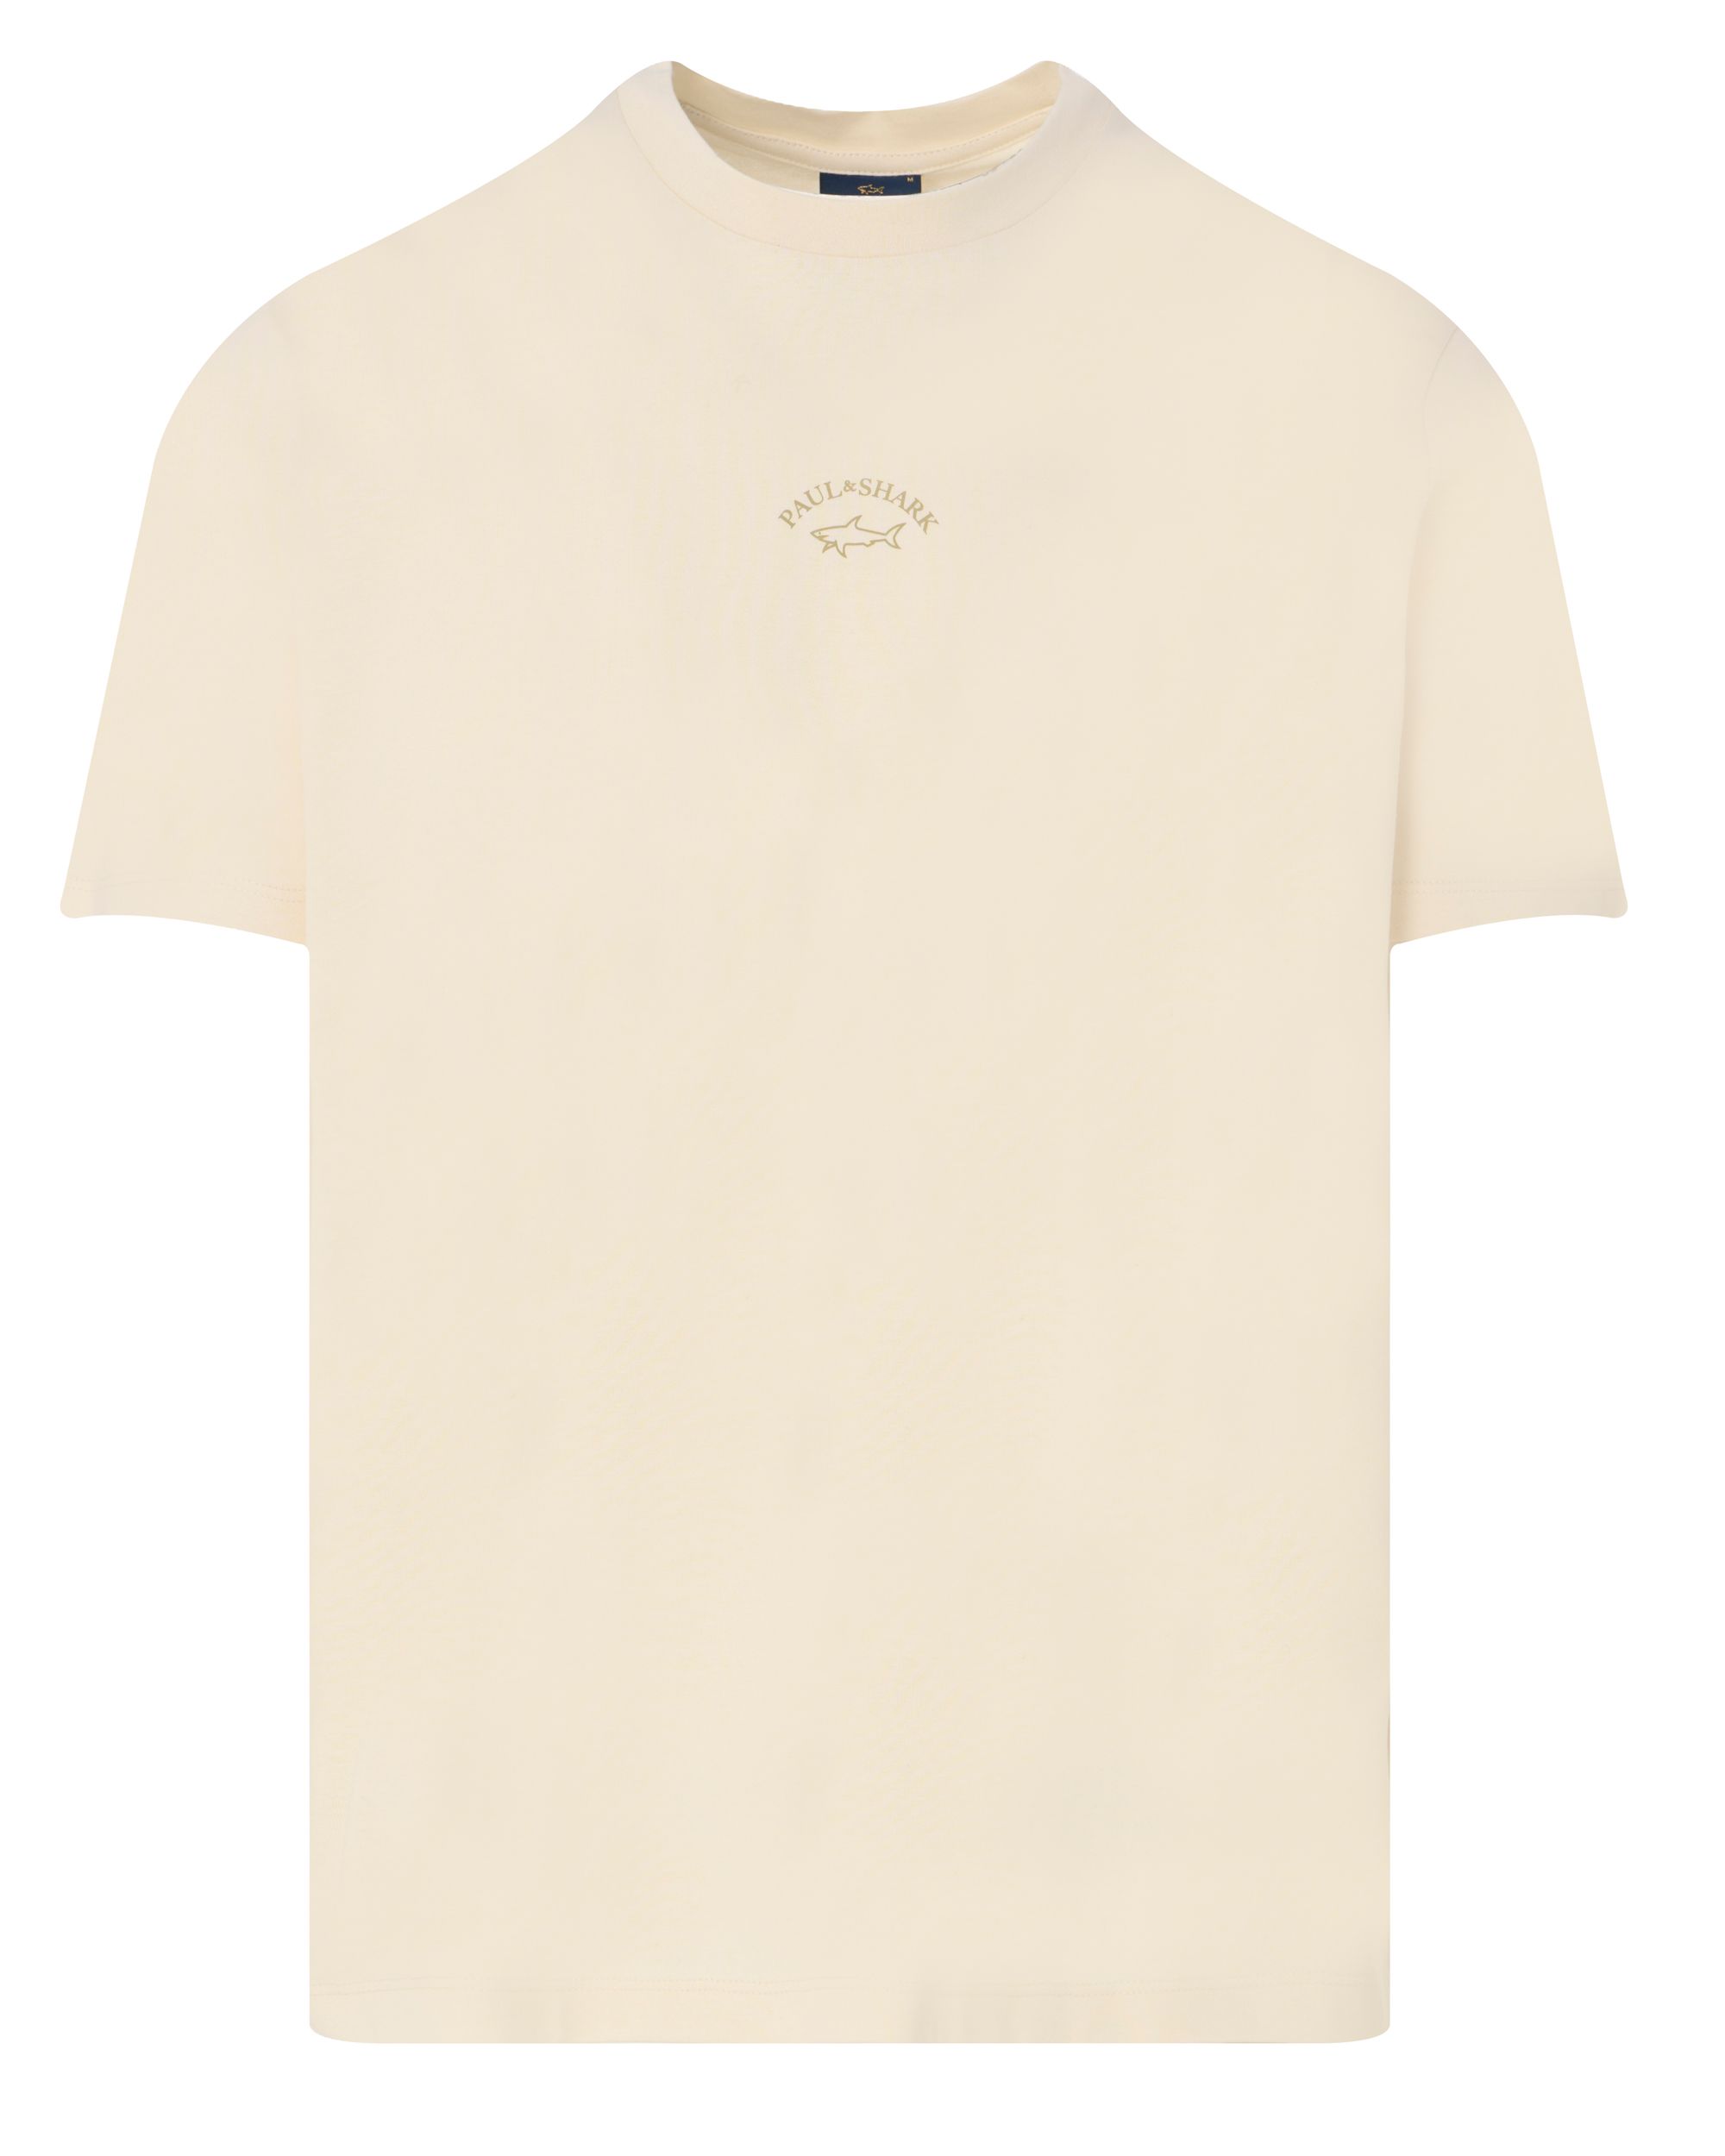 Paul & Shark T-shirt KM Ecru 092029-001-XL